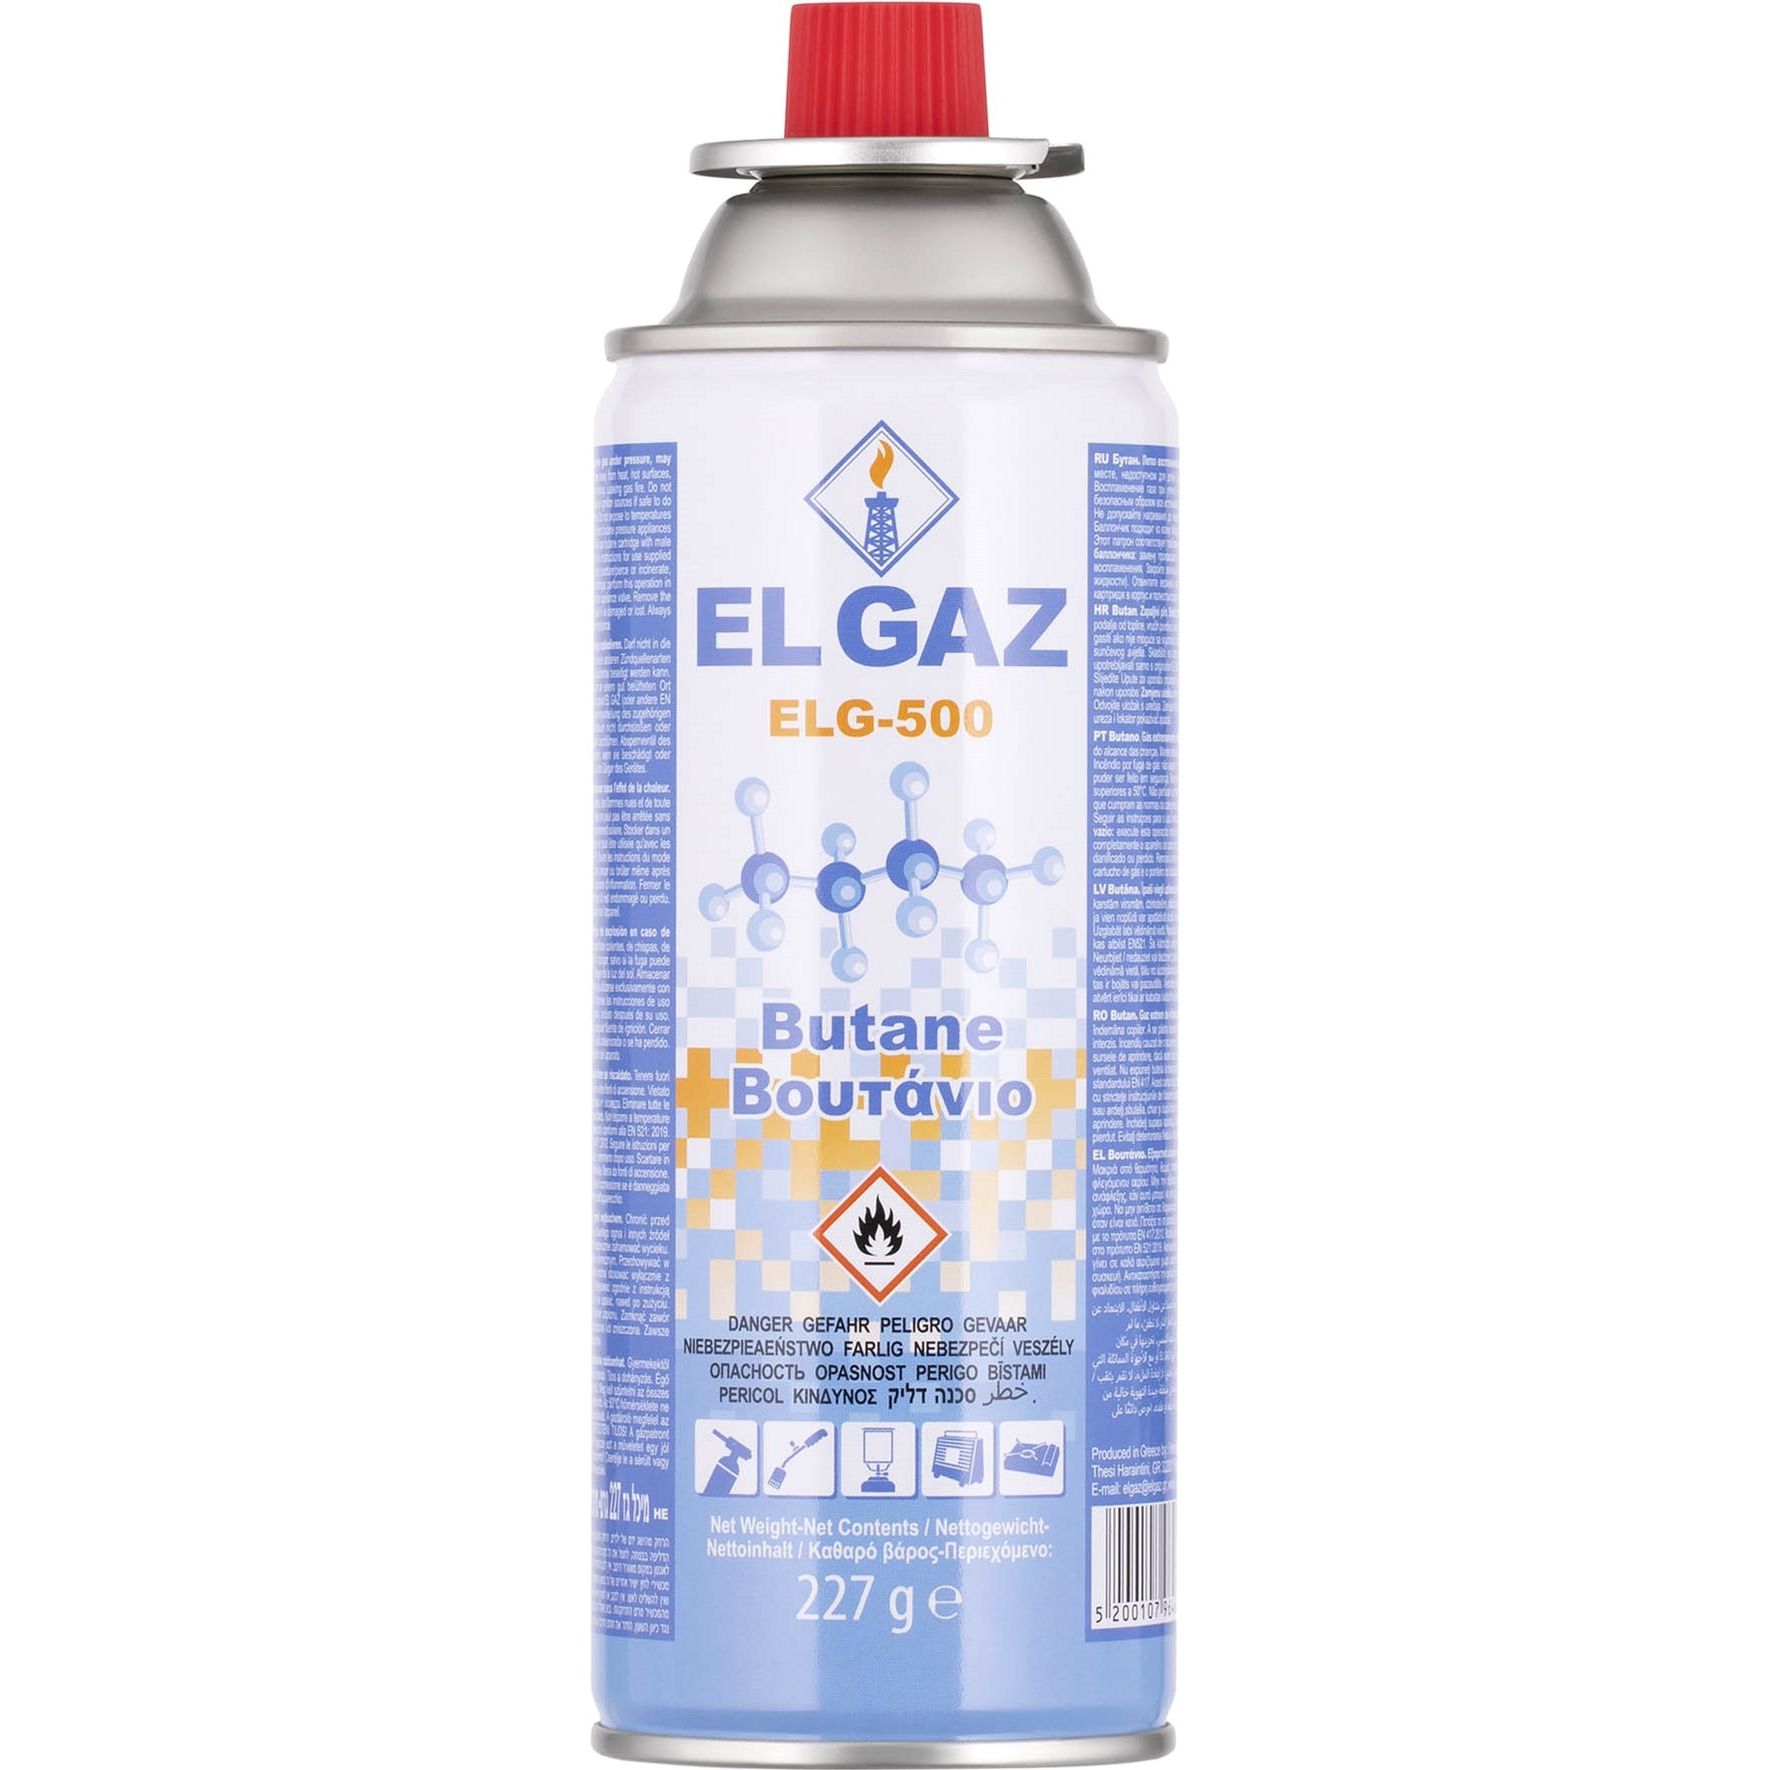 Фото - Газовый баллон EL GAZ Балон-картридж газовий  ELG-500 цанговий бутан 227 г  (104ELG-500)